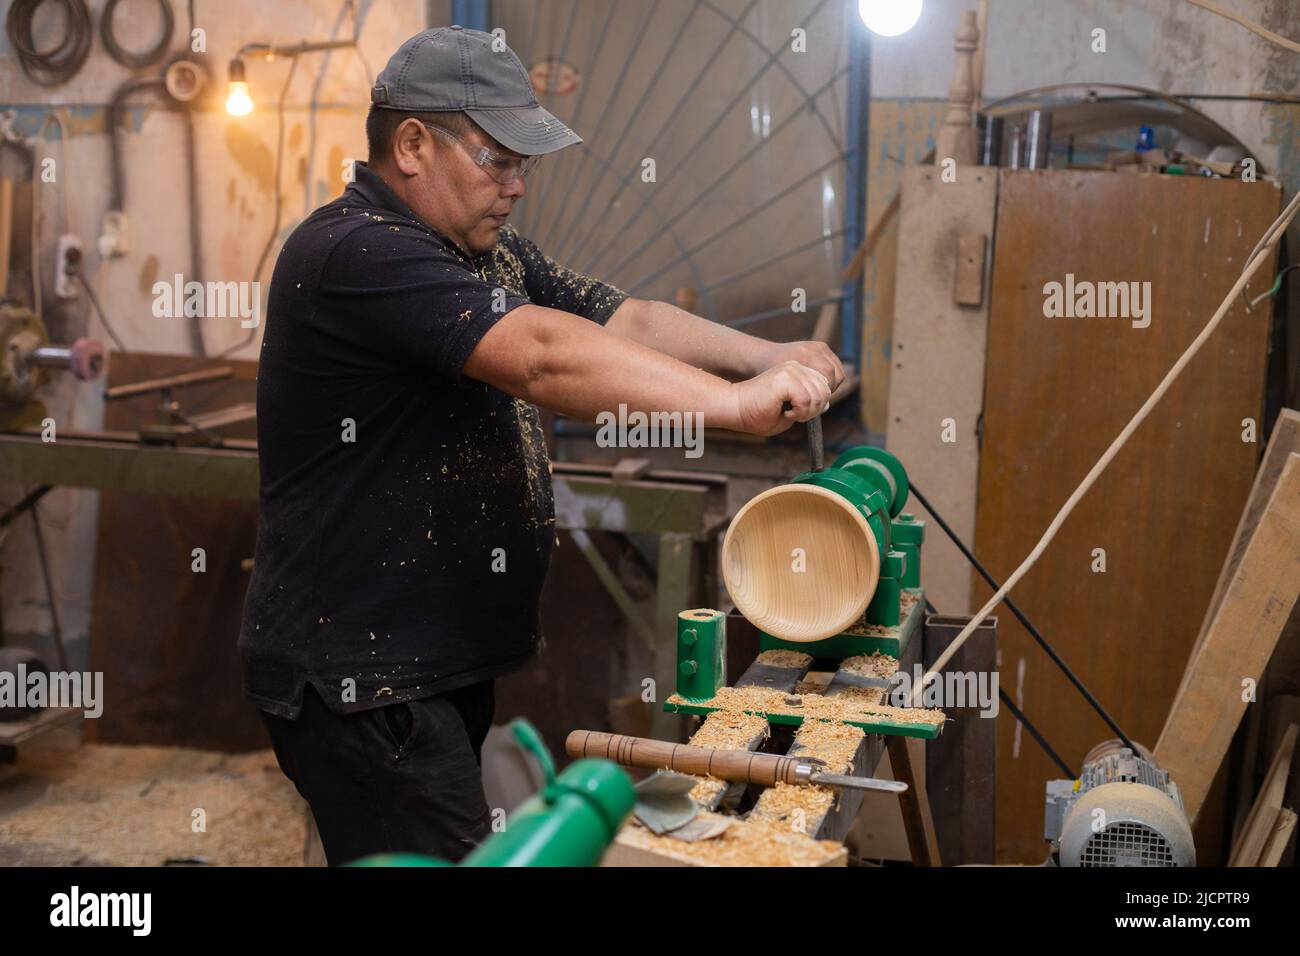 Zimmermann bereitet Maschine für das Drehen von Holz auf einer Drehbank vor  Stockfotografie - Alamy